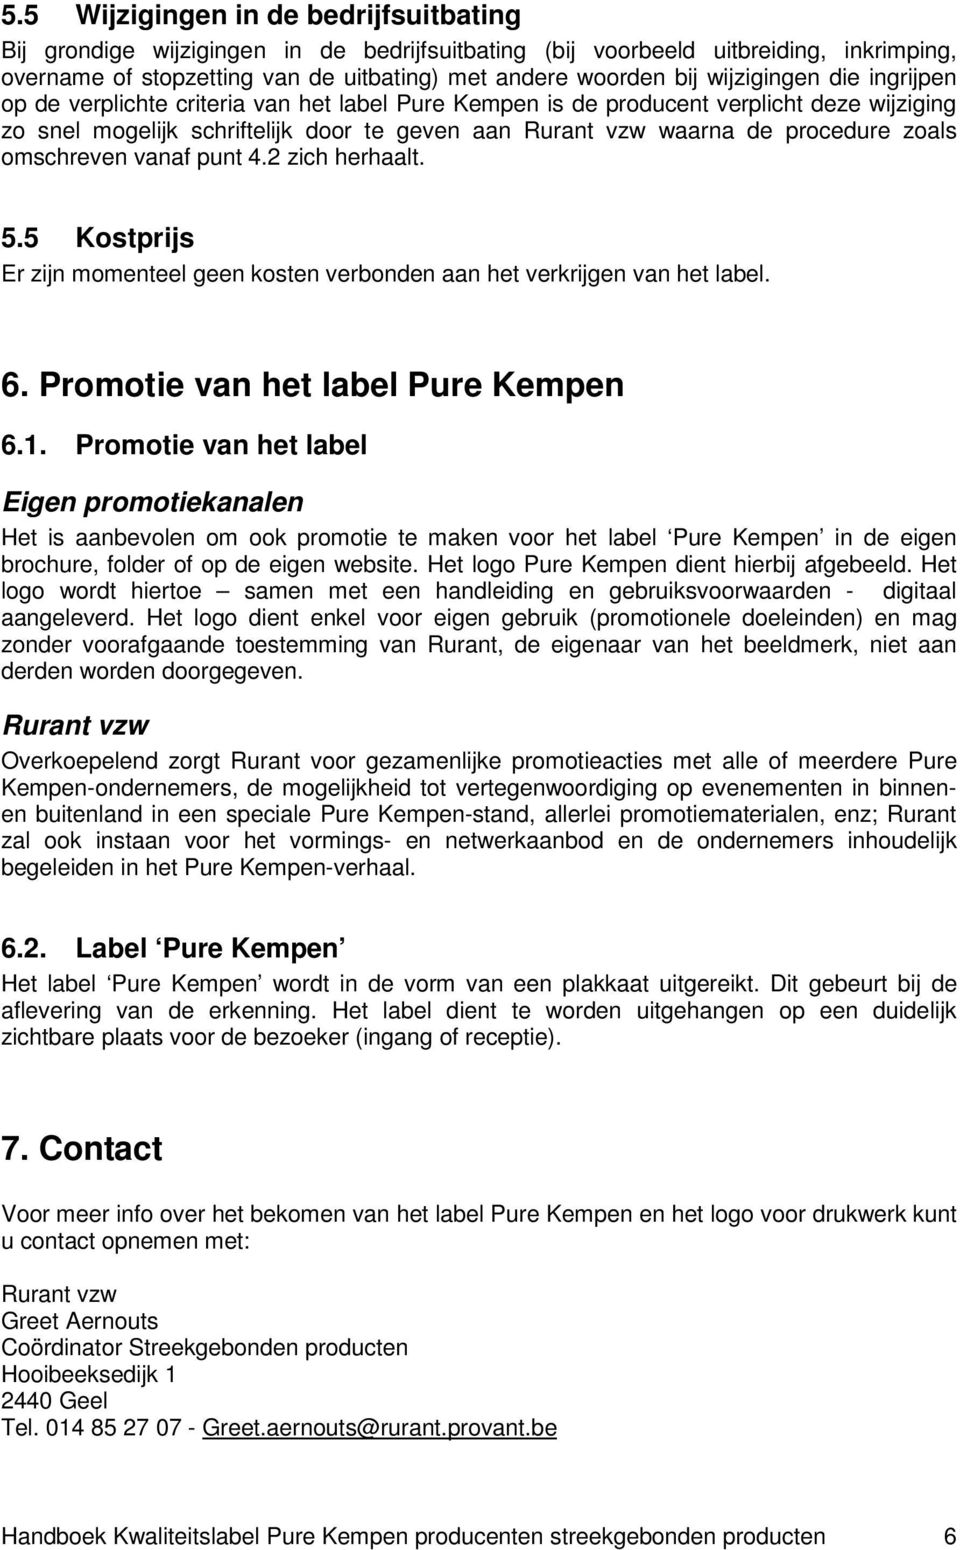 zoals omschreven vanaf punt 4.2 zich herhaalt. 5.5 Kostprijs Er zijn momenteel geen kosten verbonden aan het verkrijgen van het label. 6. Promotie van het label Pure Kempen 6.1.